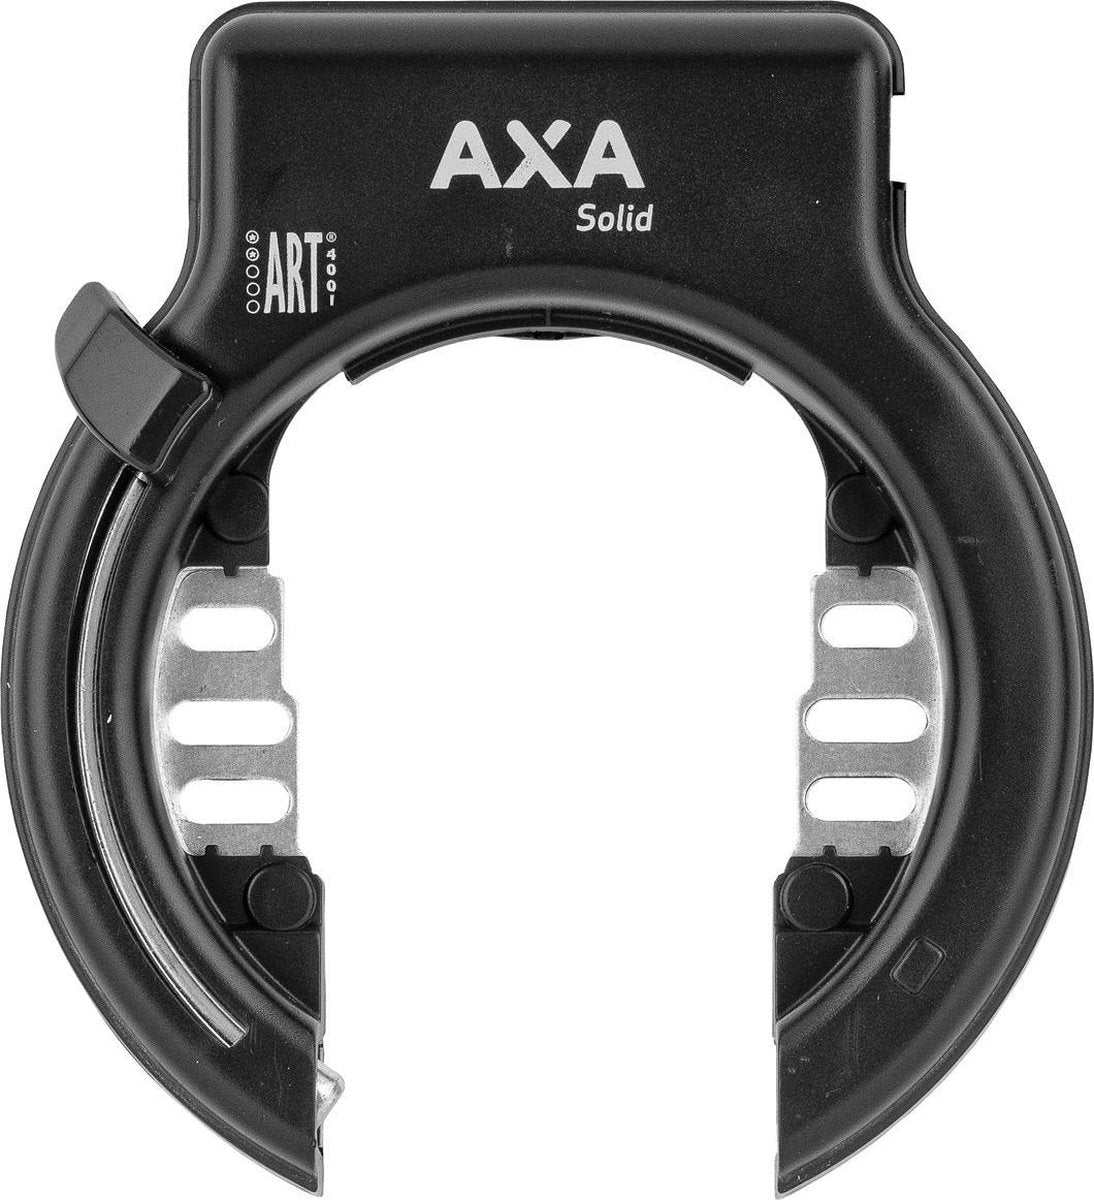 fiets slot - Axa Solid ringslot ART**